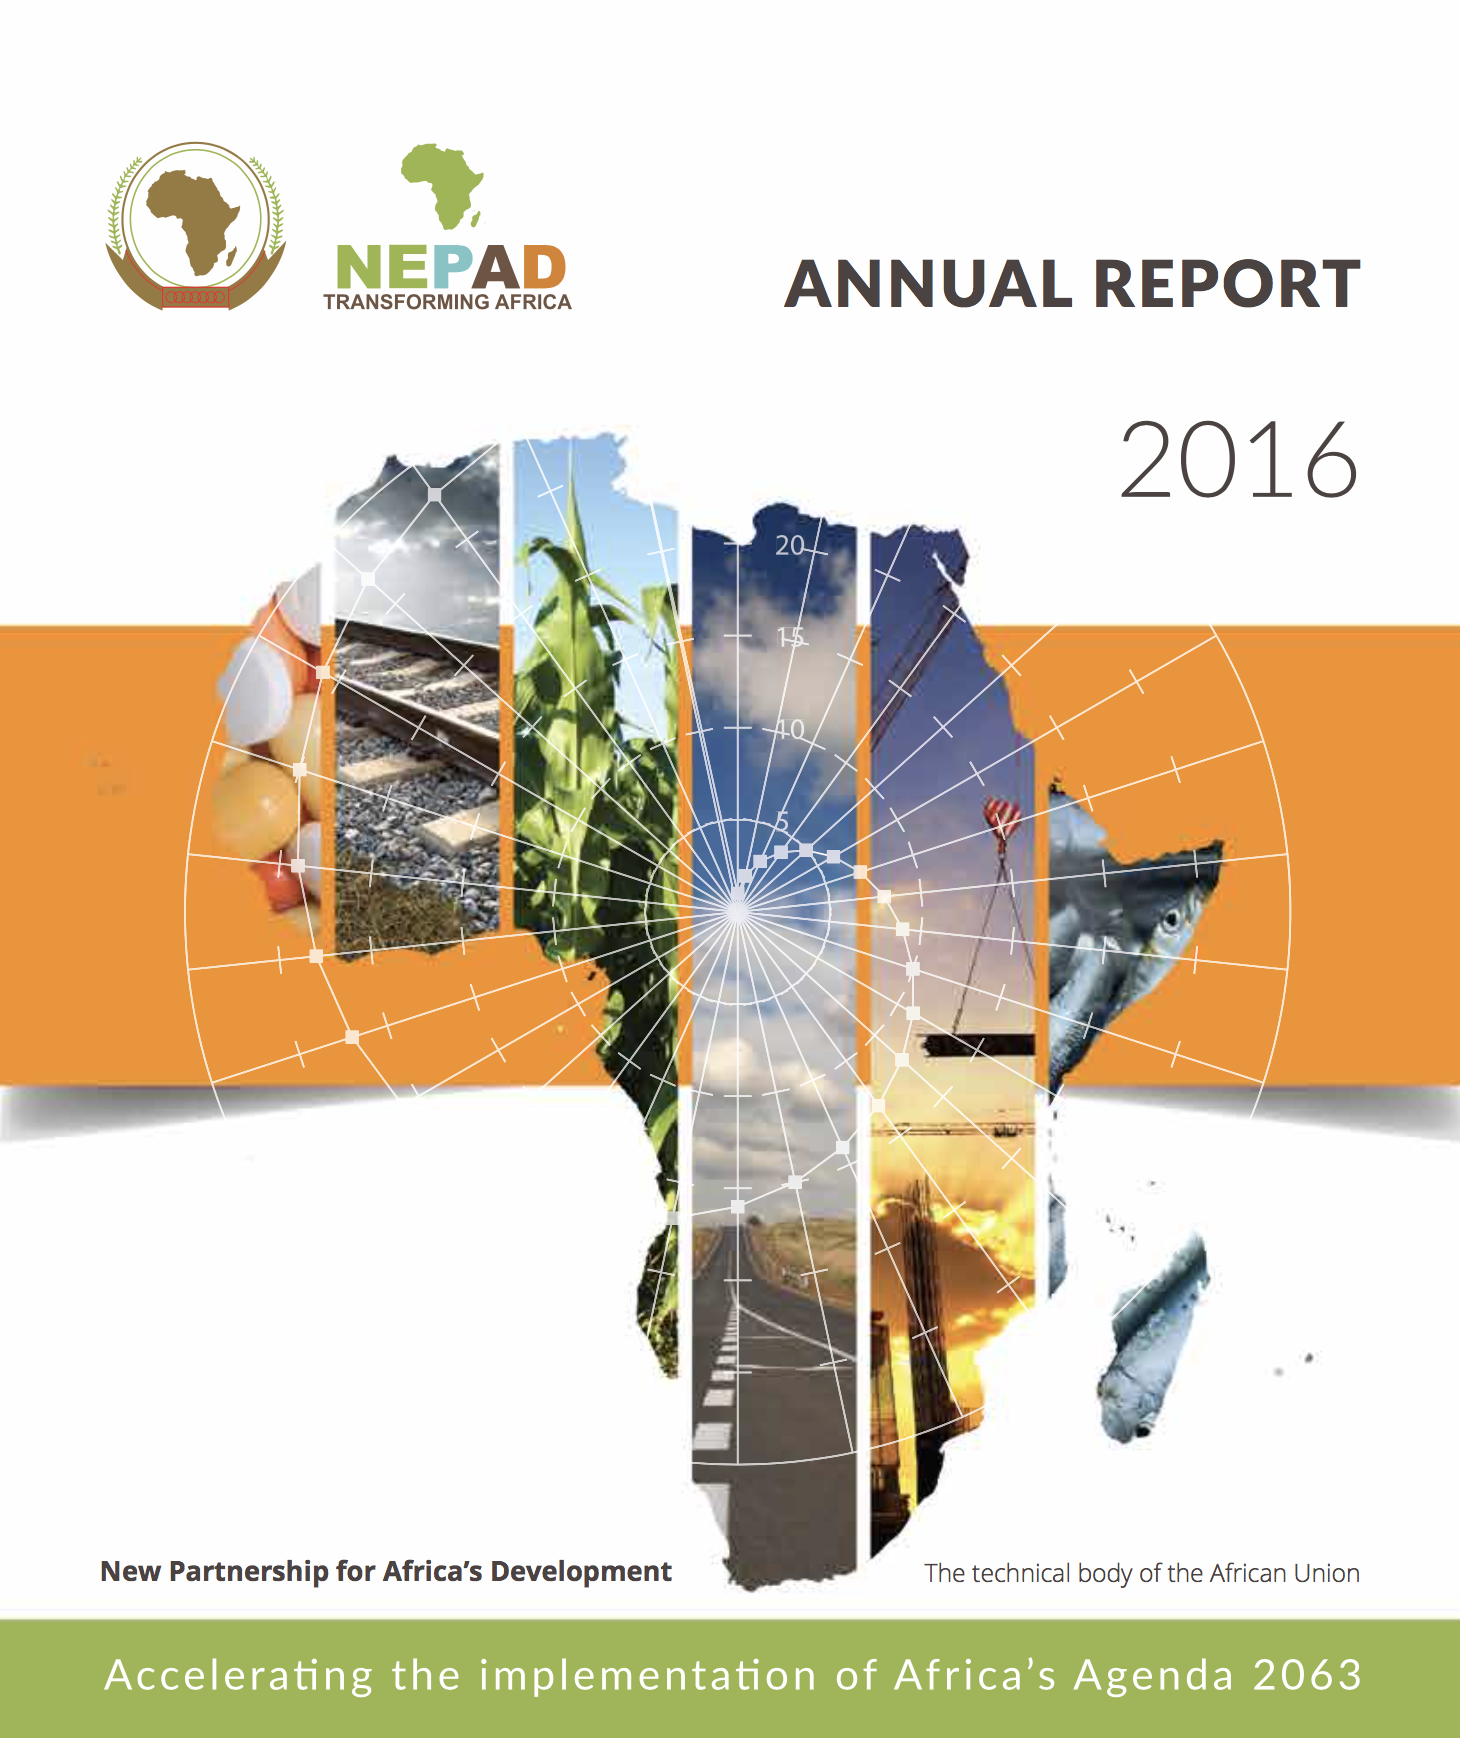 Le NEPAD compte accélérer la transformation structurelle de l’Afrique